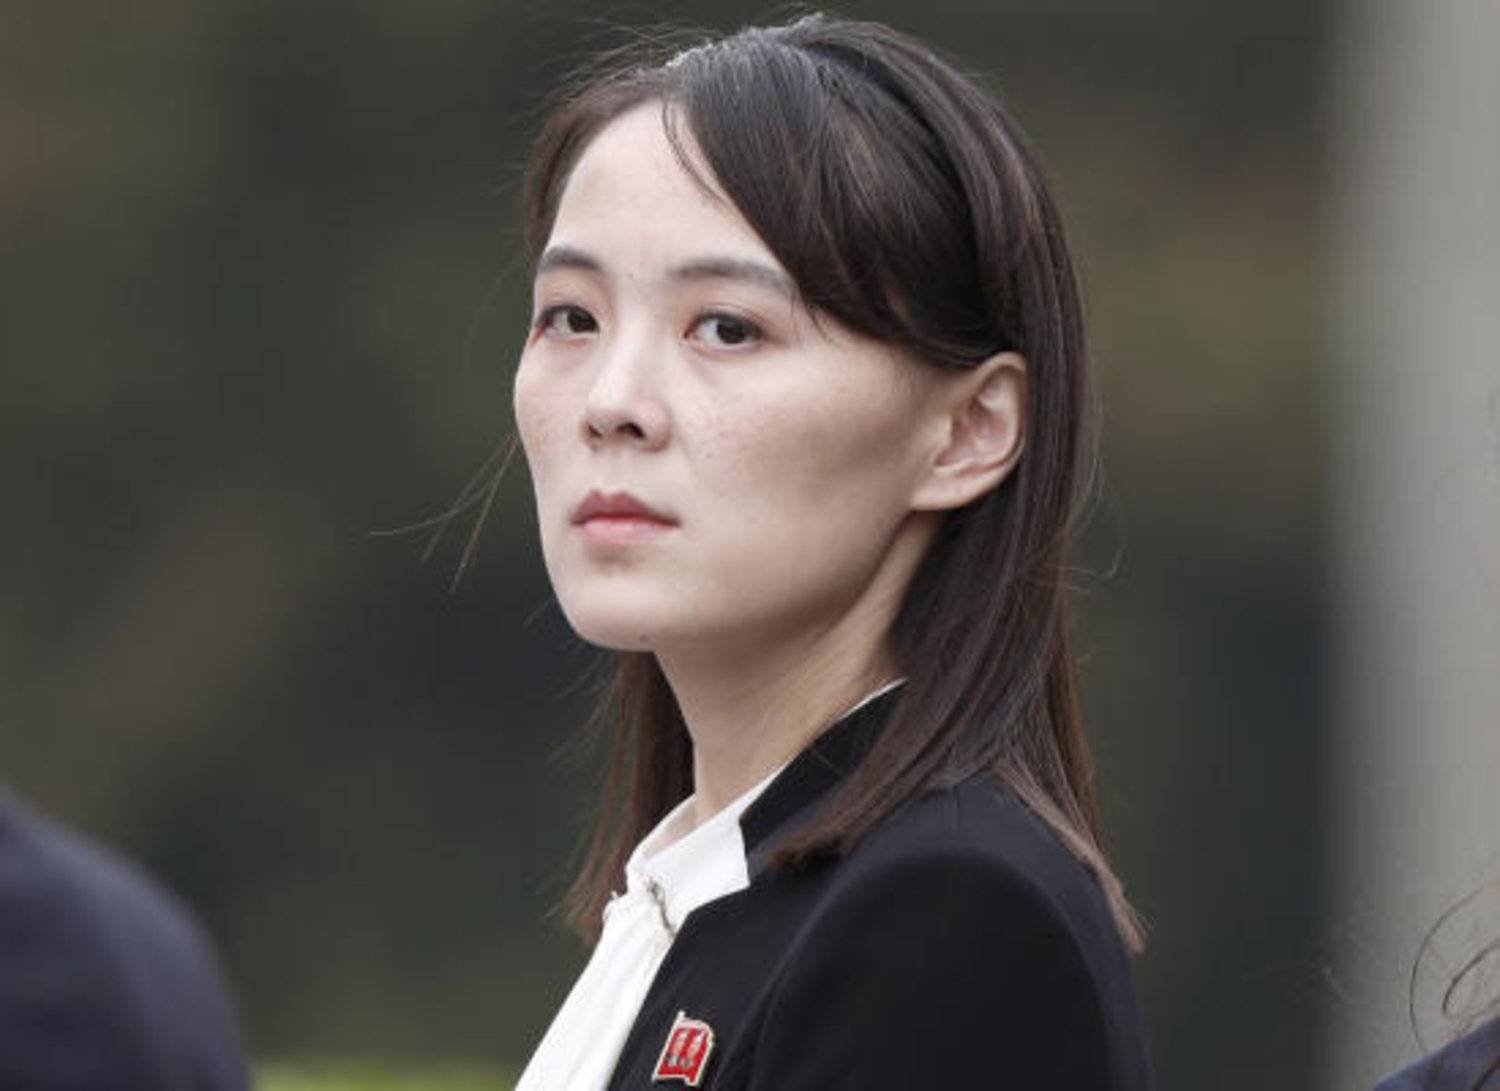 كيم يو جونغ شقيقة زعيم كوريا الشمالية (ا.ب)
